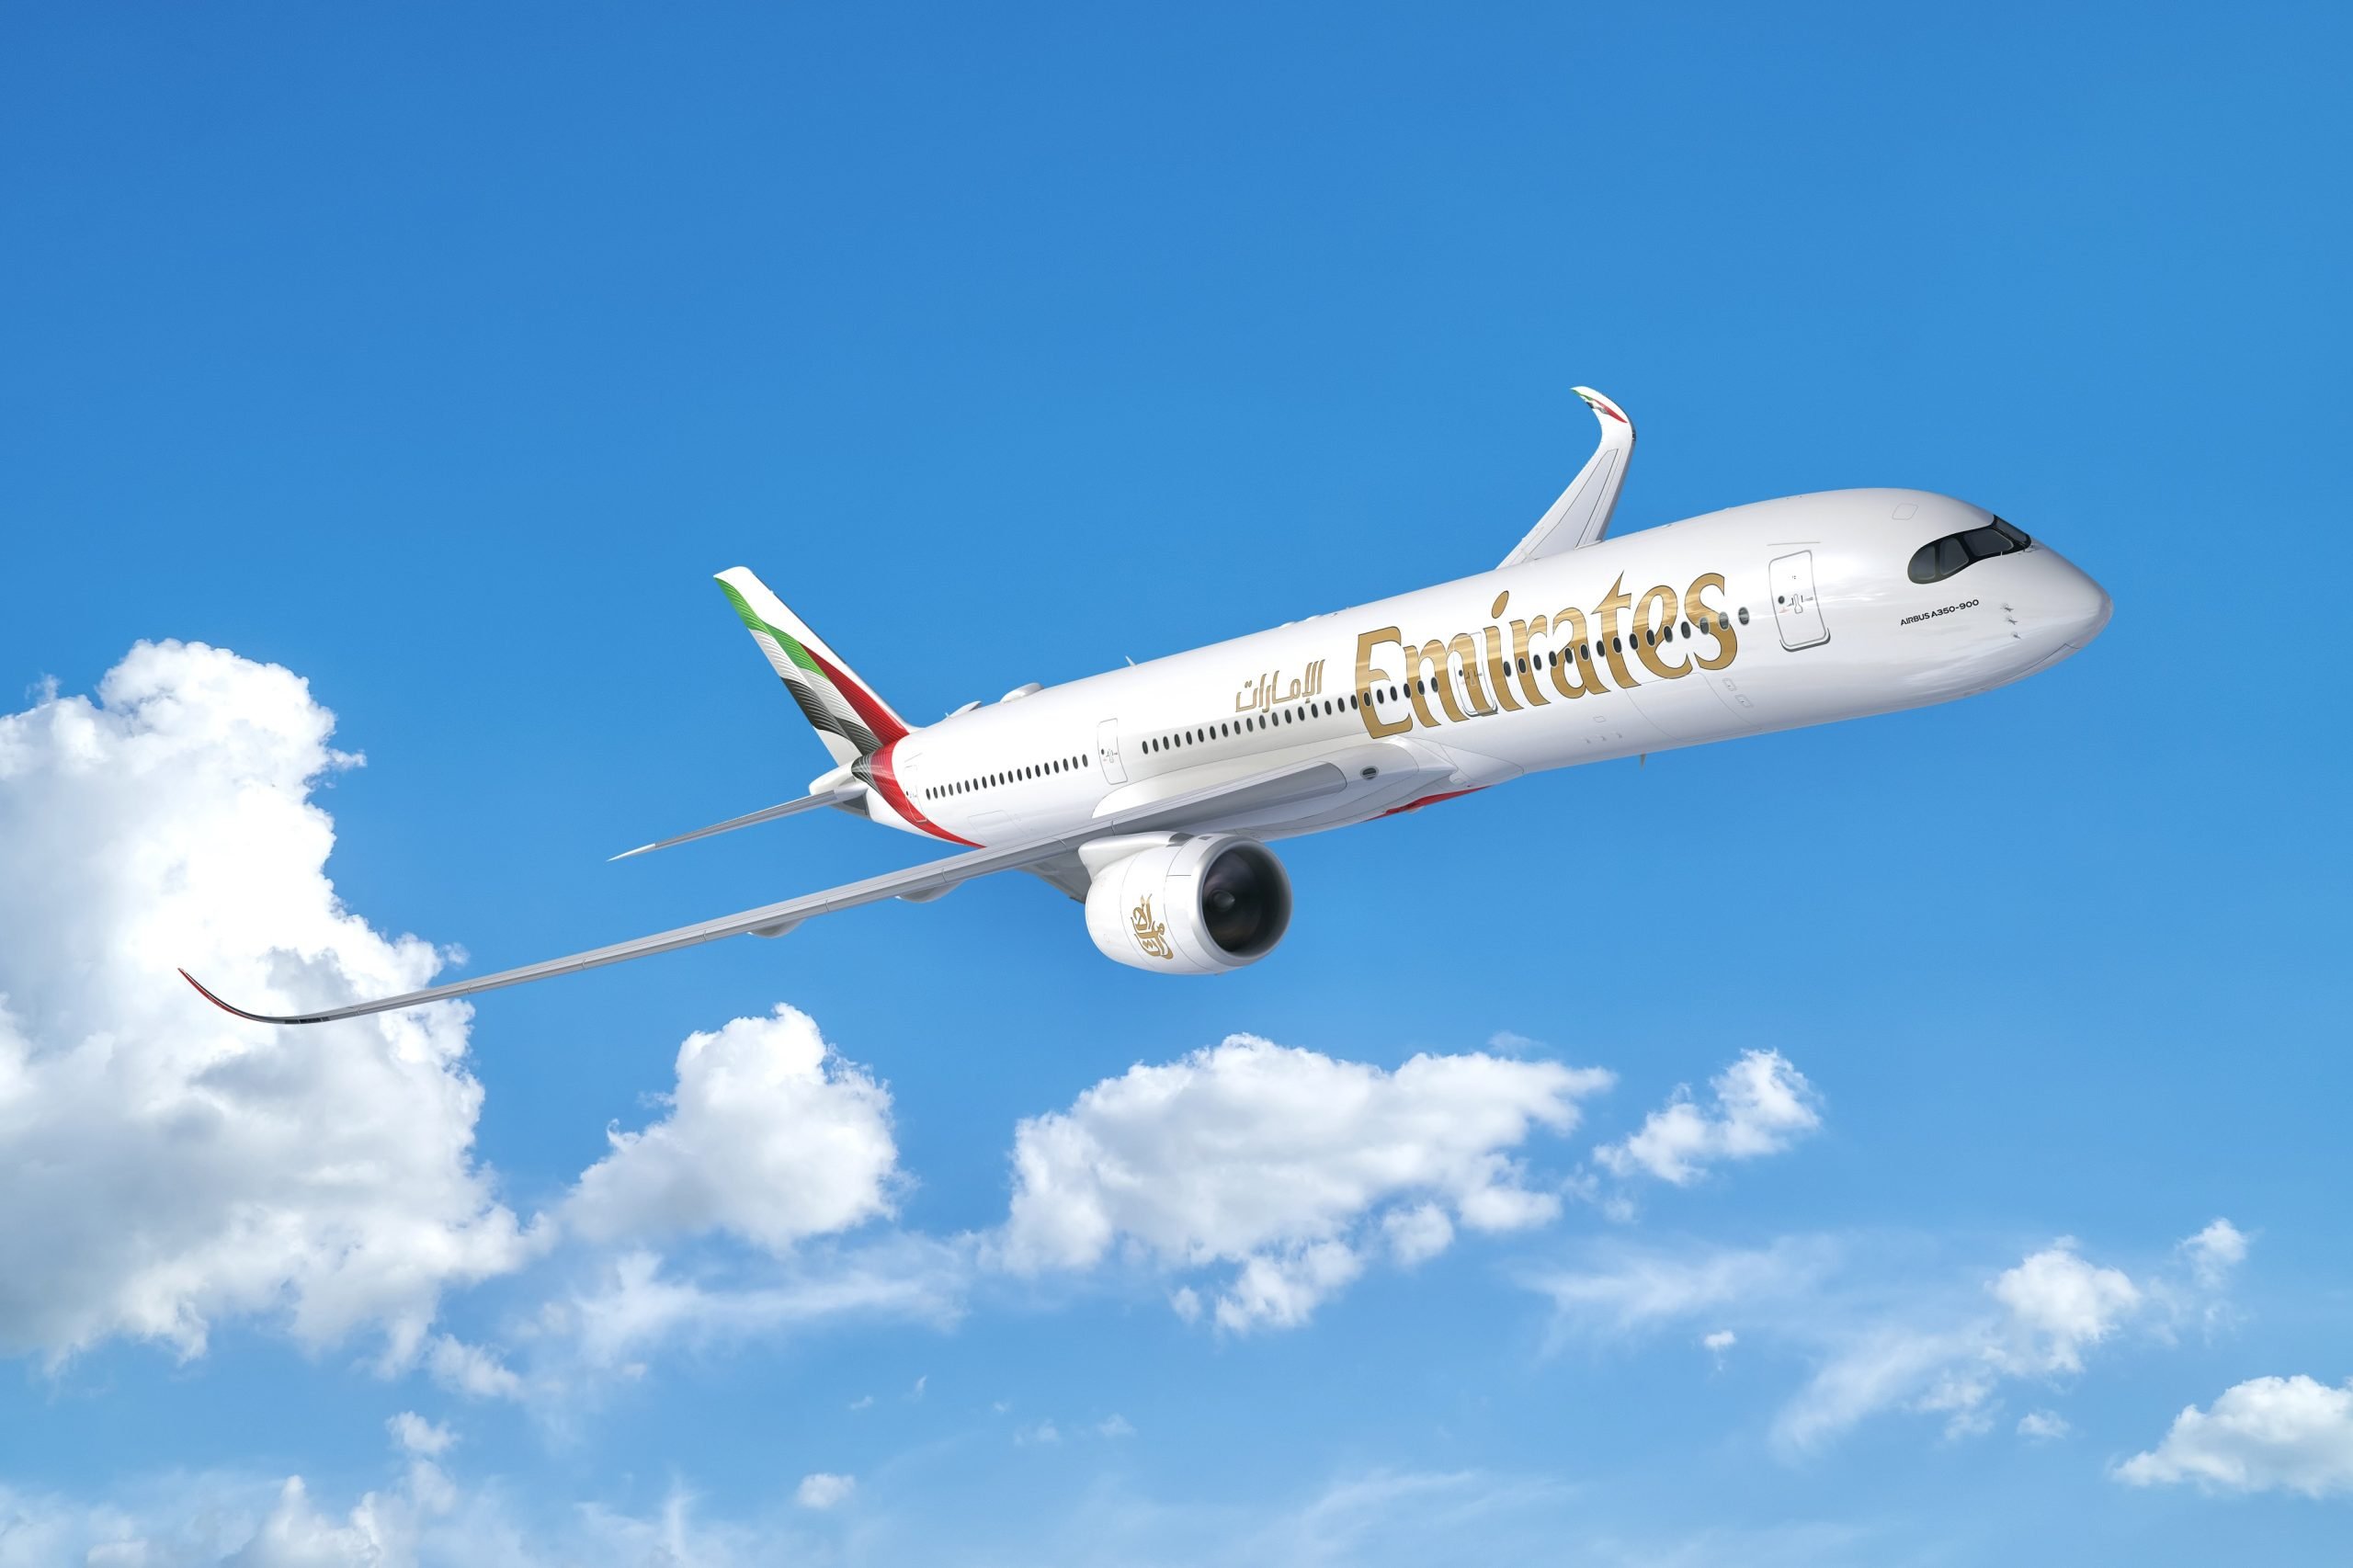 Dubai Airshow: Emirates realiza nova encomenda com a Airbus